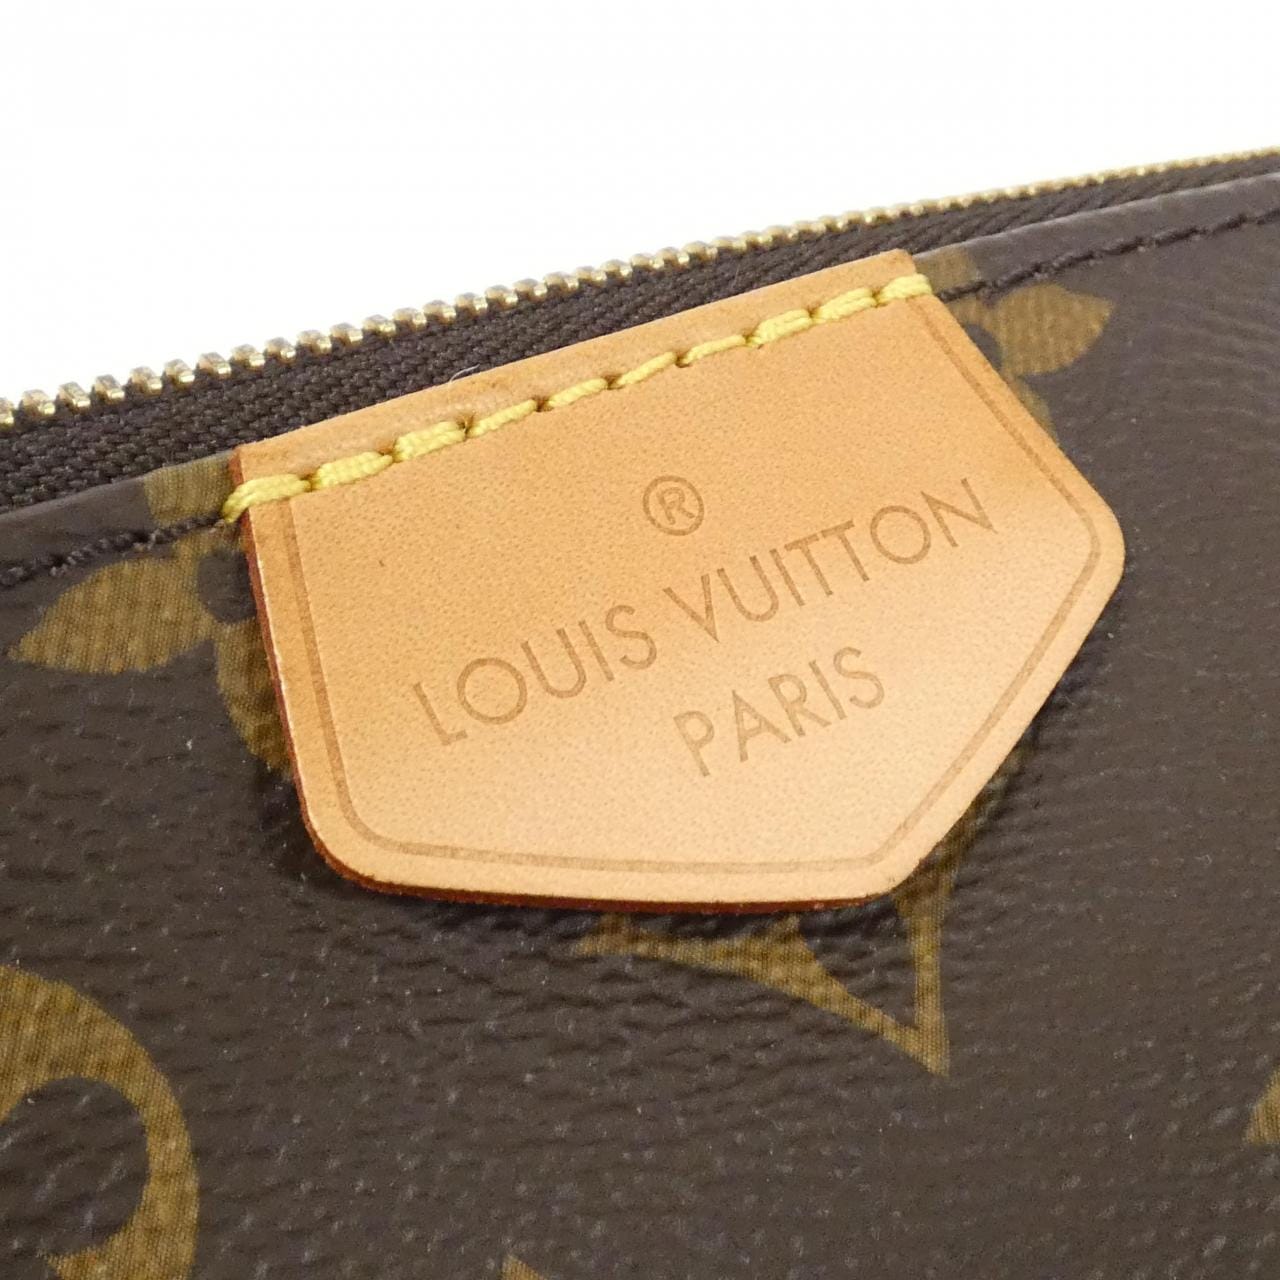 LOUIS VUITTON Monogram Multi Pochette Accessory M44813 Shoulder Bag